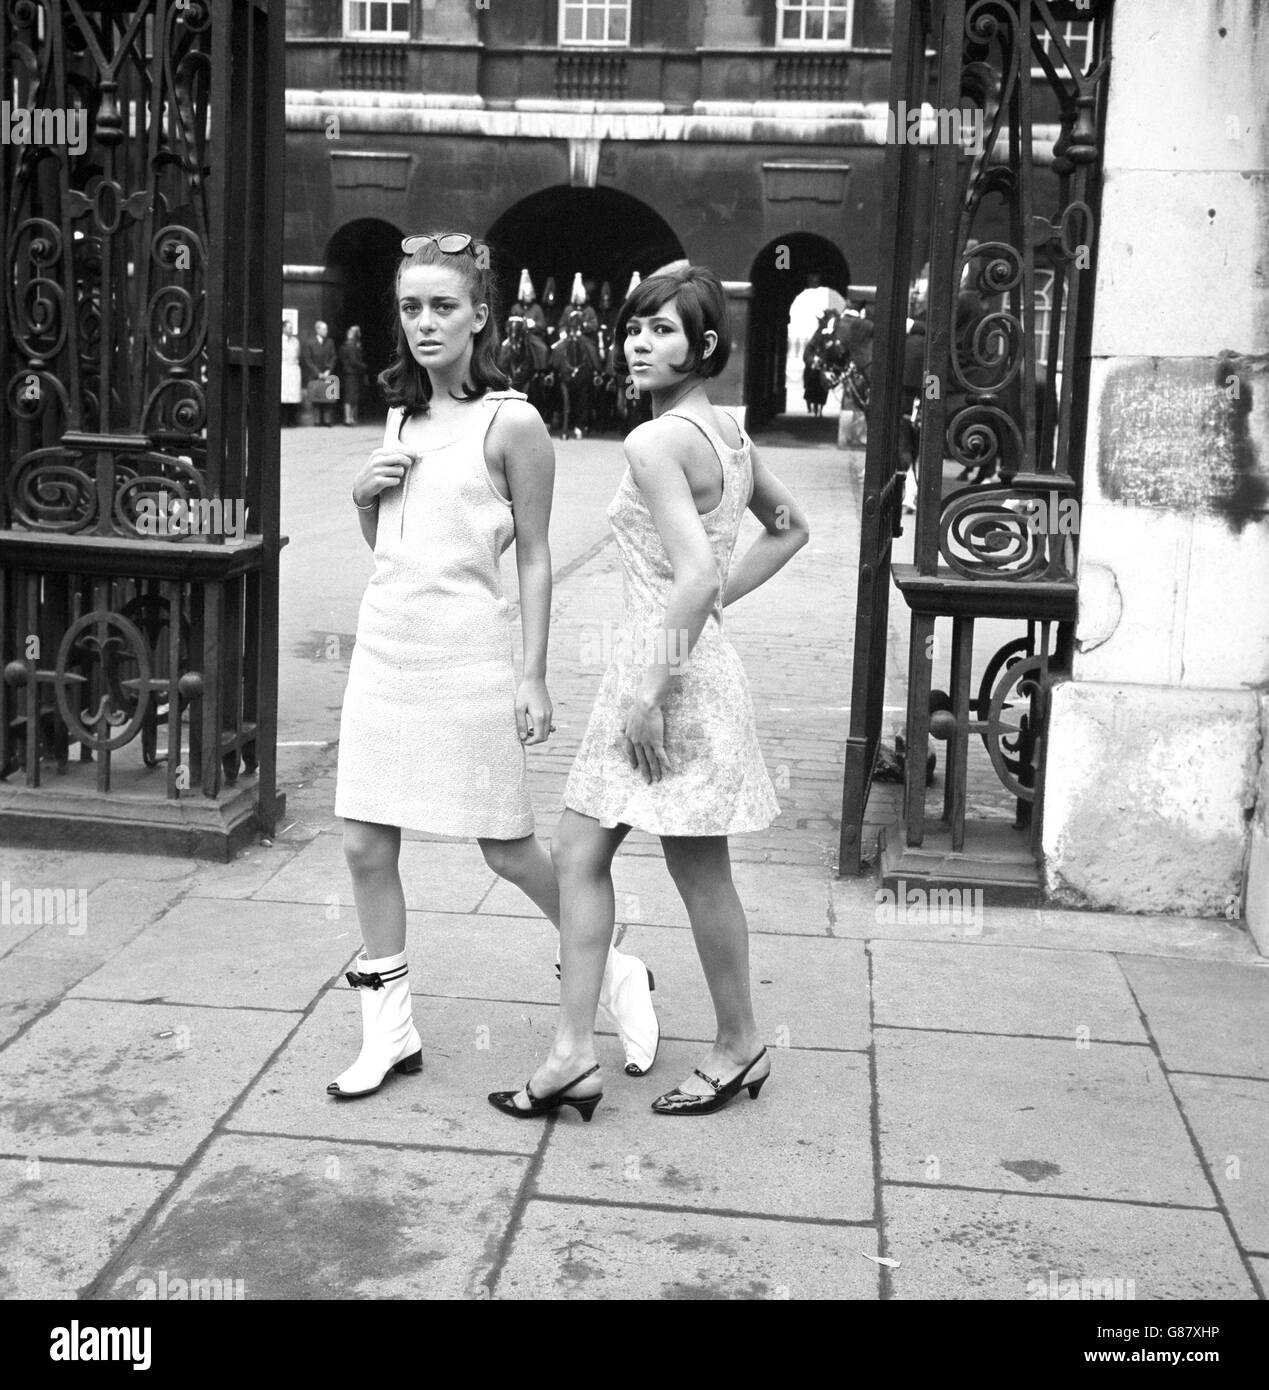 Irene Havelykke (à gauche) et le modèle jamaïcain Tiffany montrant les nouvelles fashions devant l'entrée de Horse Guards Parade Londres. Banque D'Images